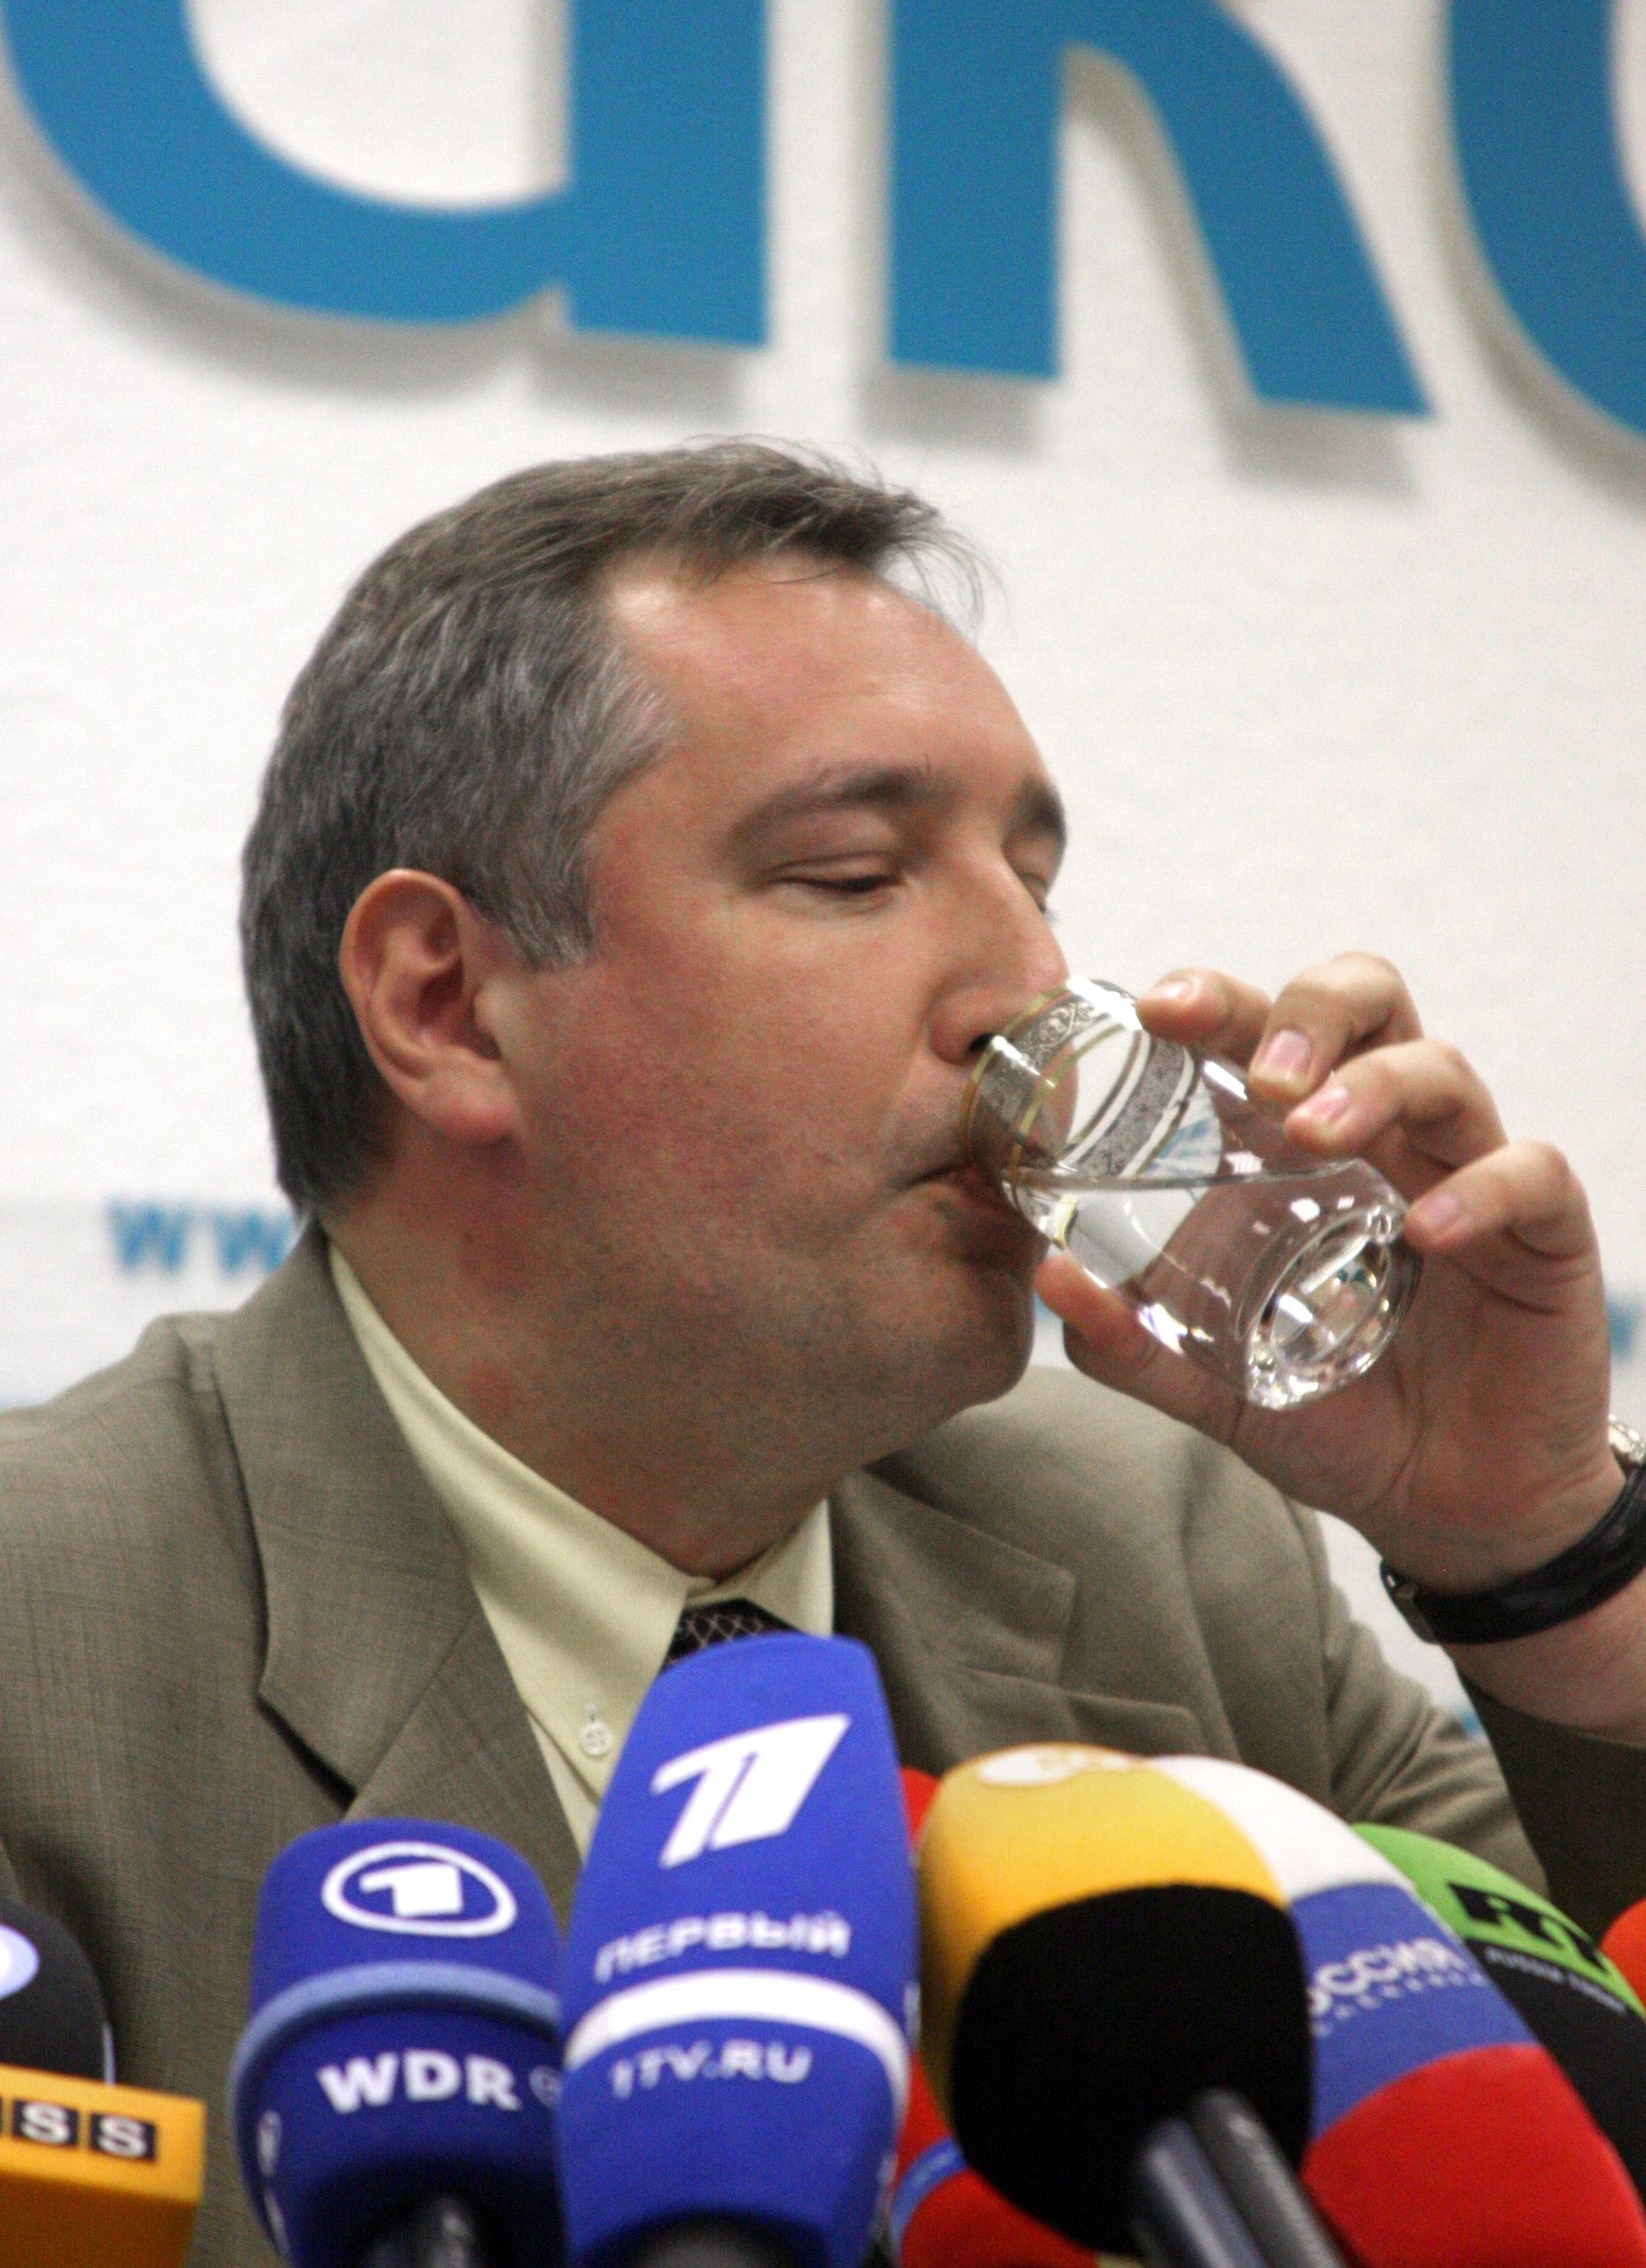 Vene Föderatsiooni alaline esindaja NATO juures Dmitri Rogozin rüüpamas pressikonverentsil sõõmu vett.